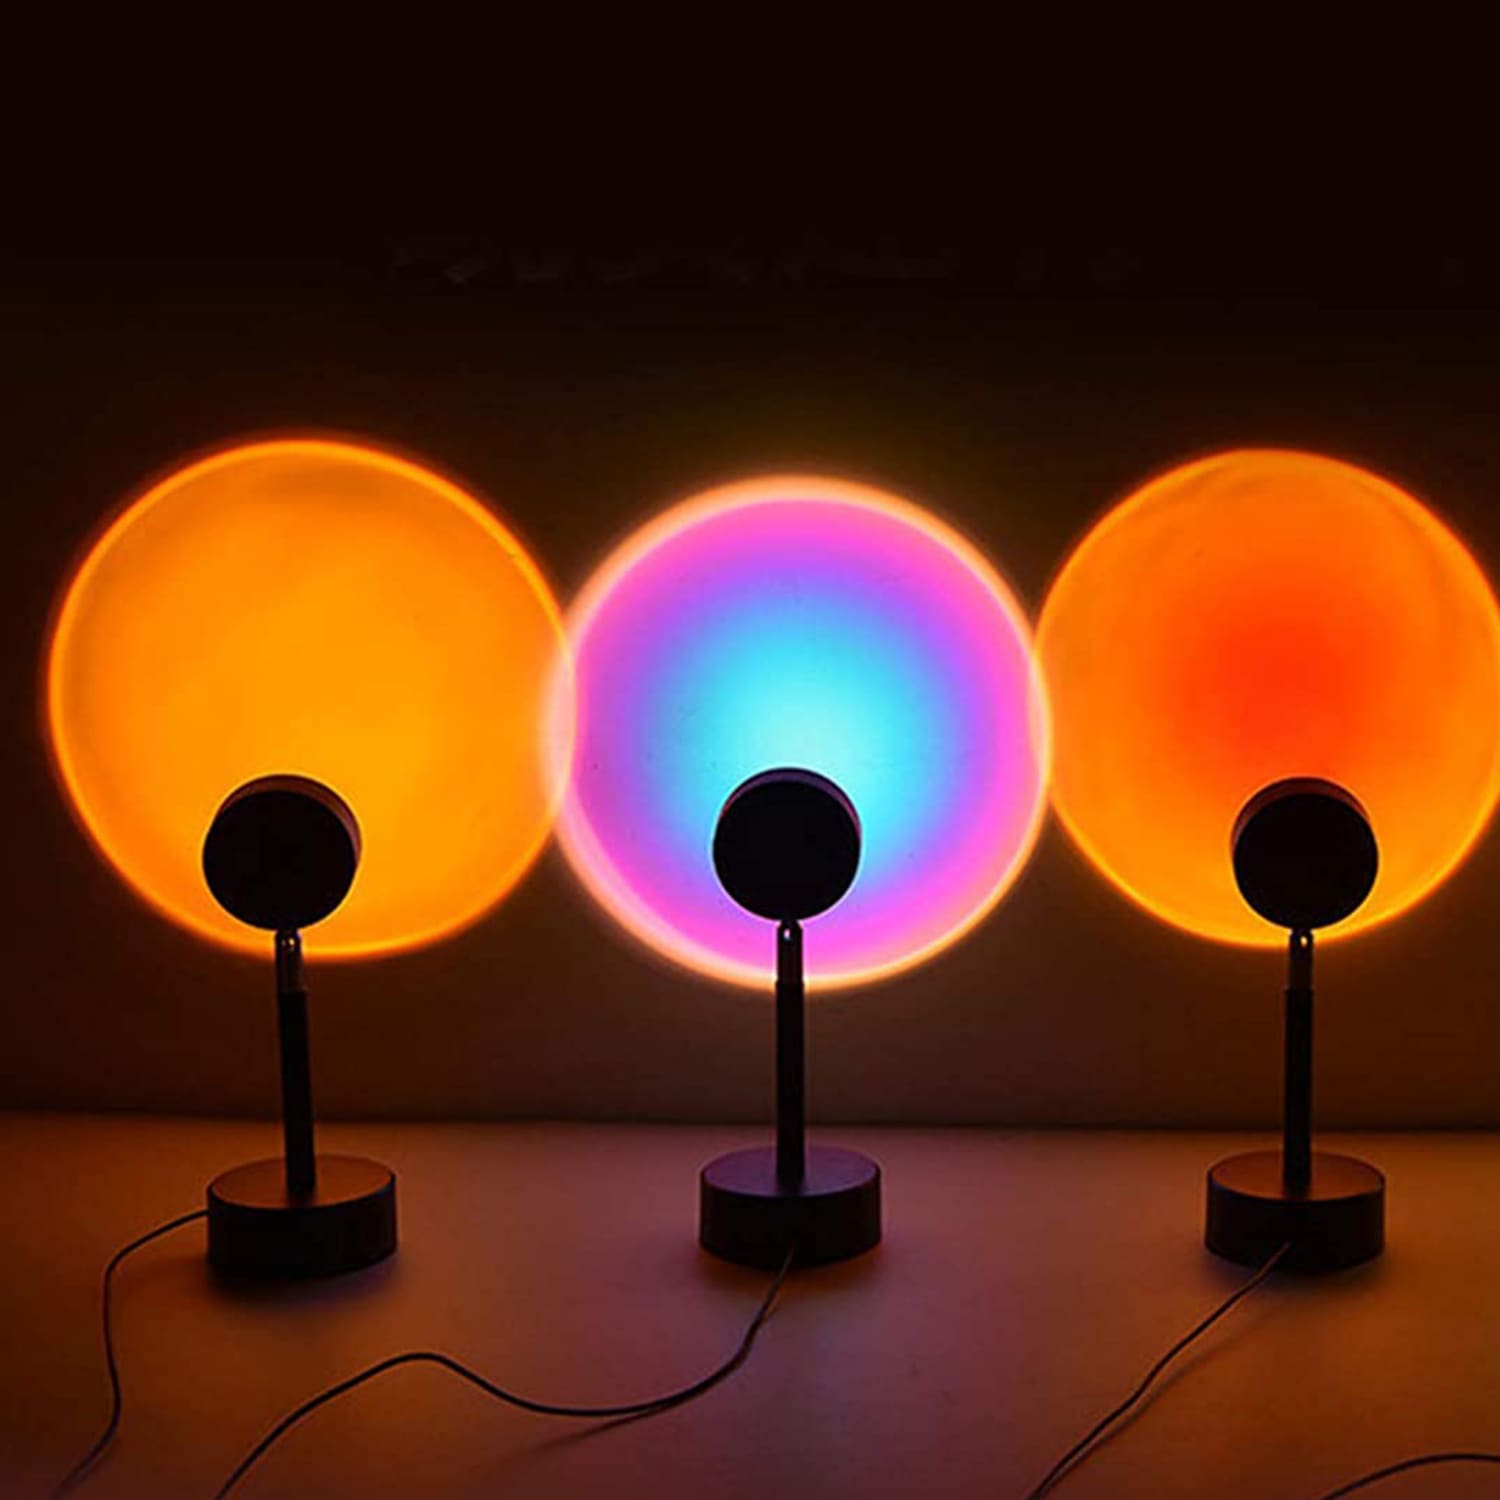 Projector Lamps, projector Bulbs - Newegg.com